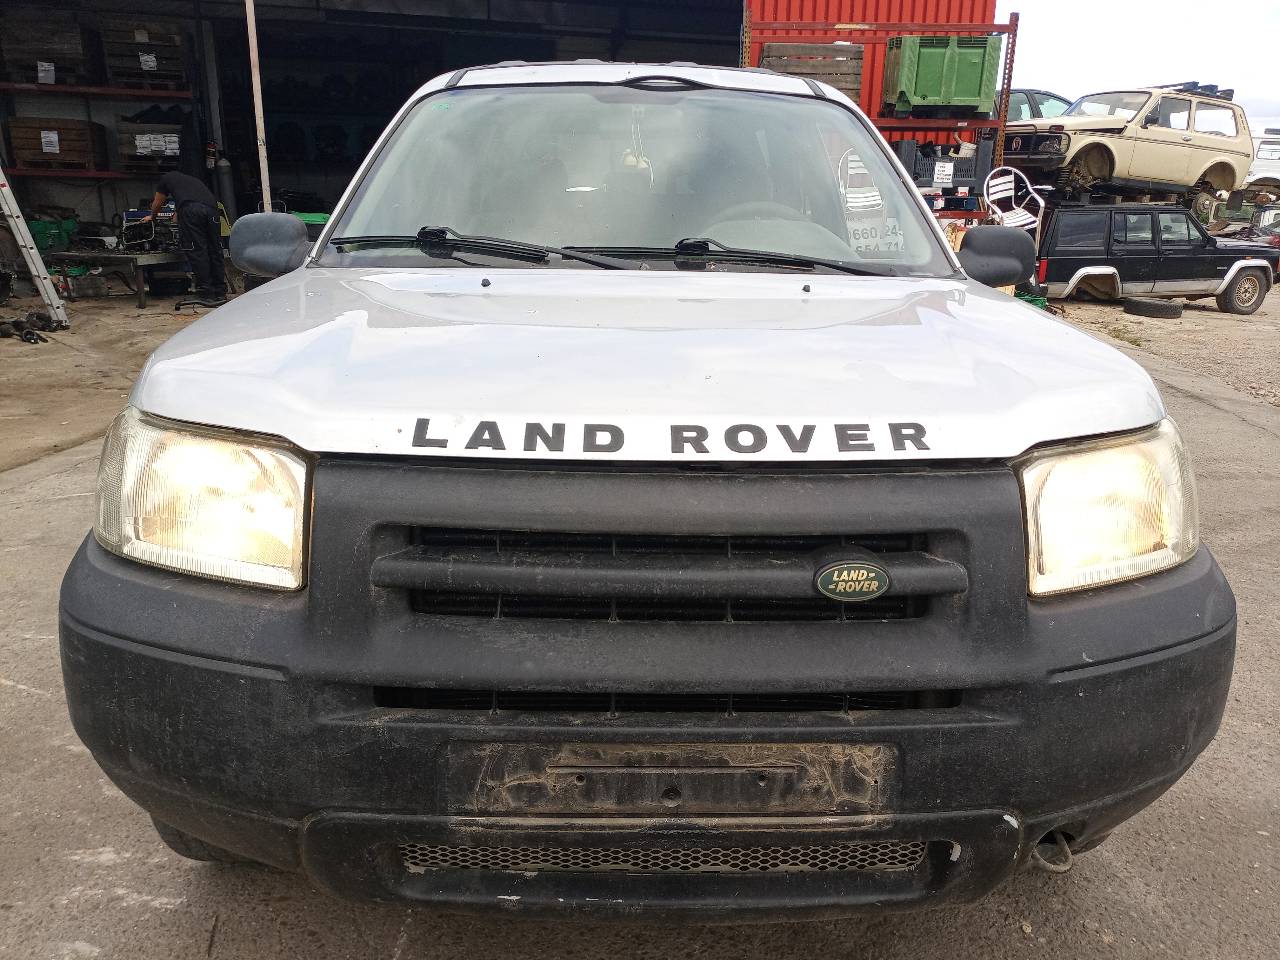 LAND ROVER Freelander 1 generation (1998-2006) Front Left Seatbelt 24690278